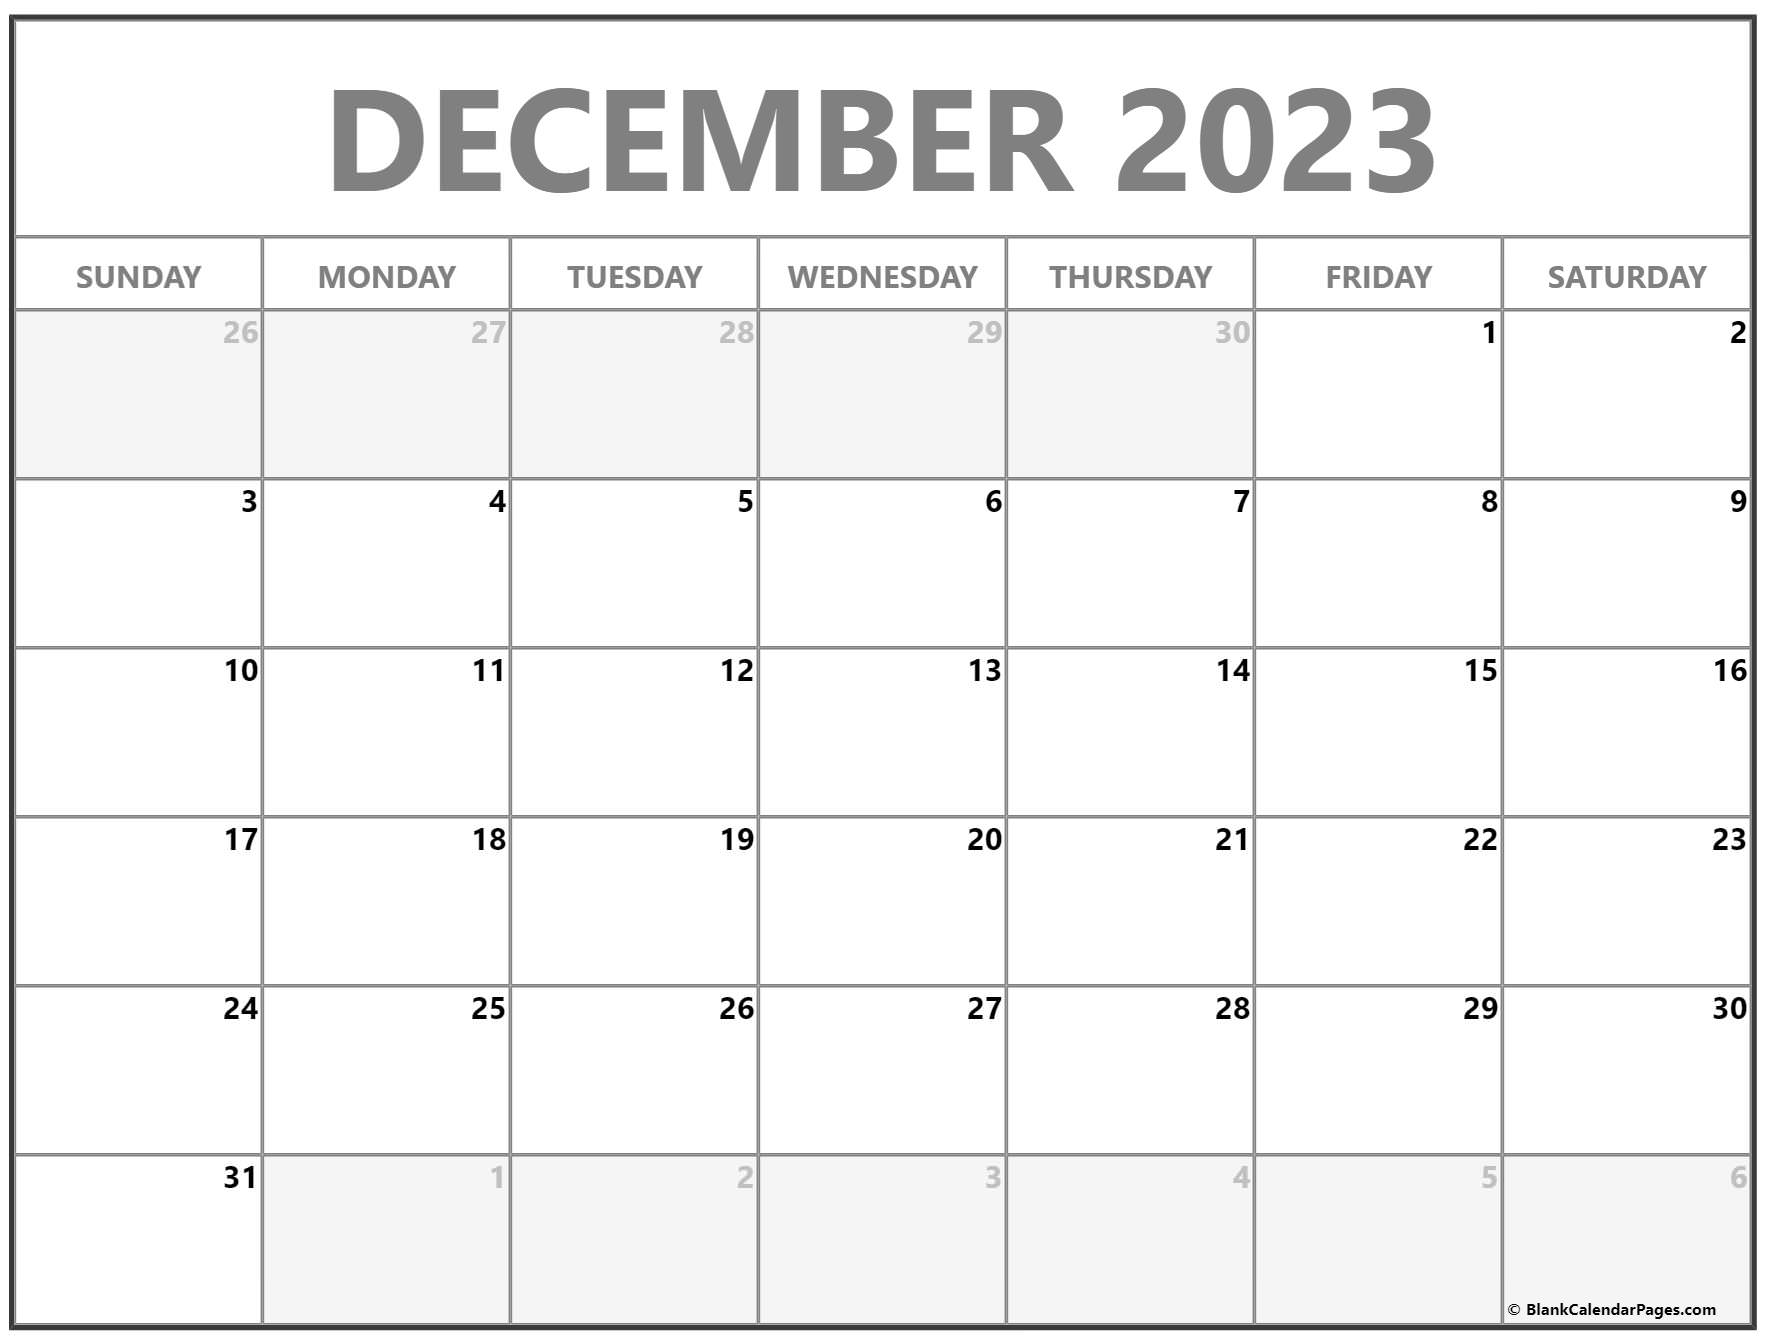 december-2023-calendar-printable-free-pelajaran